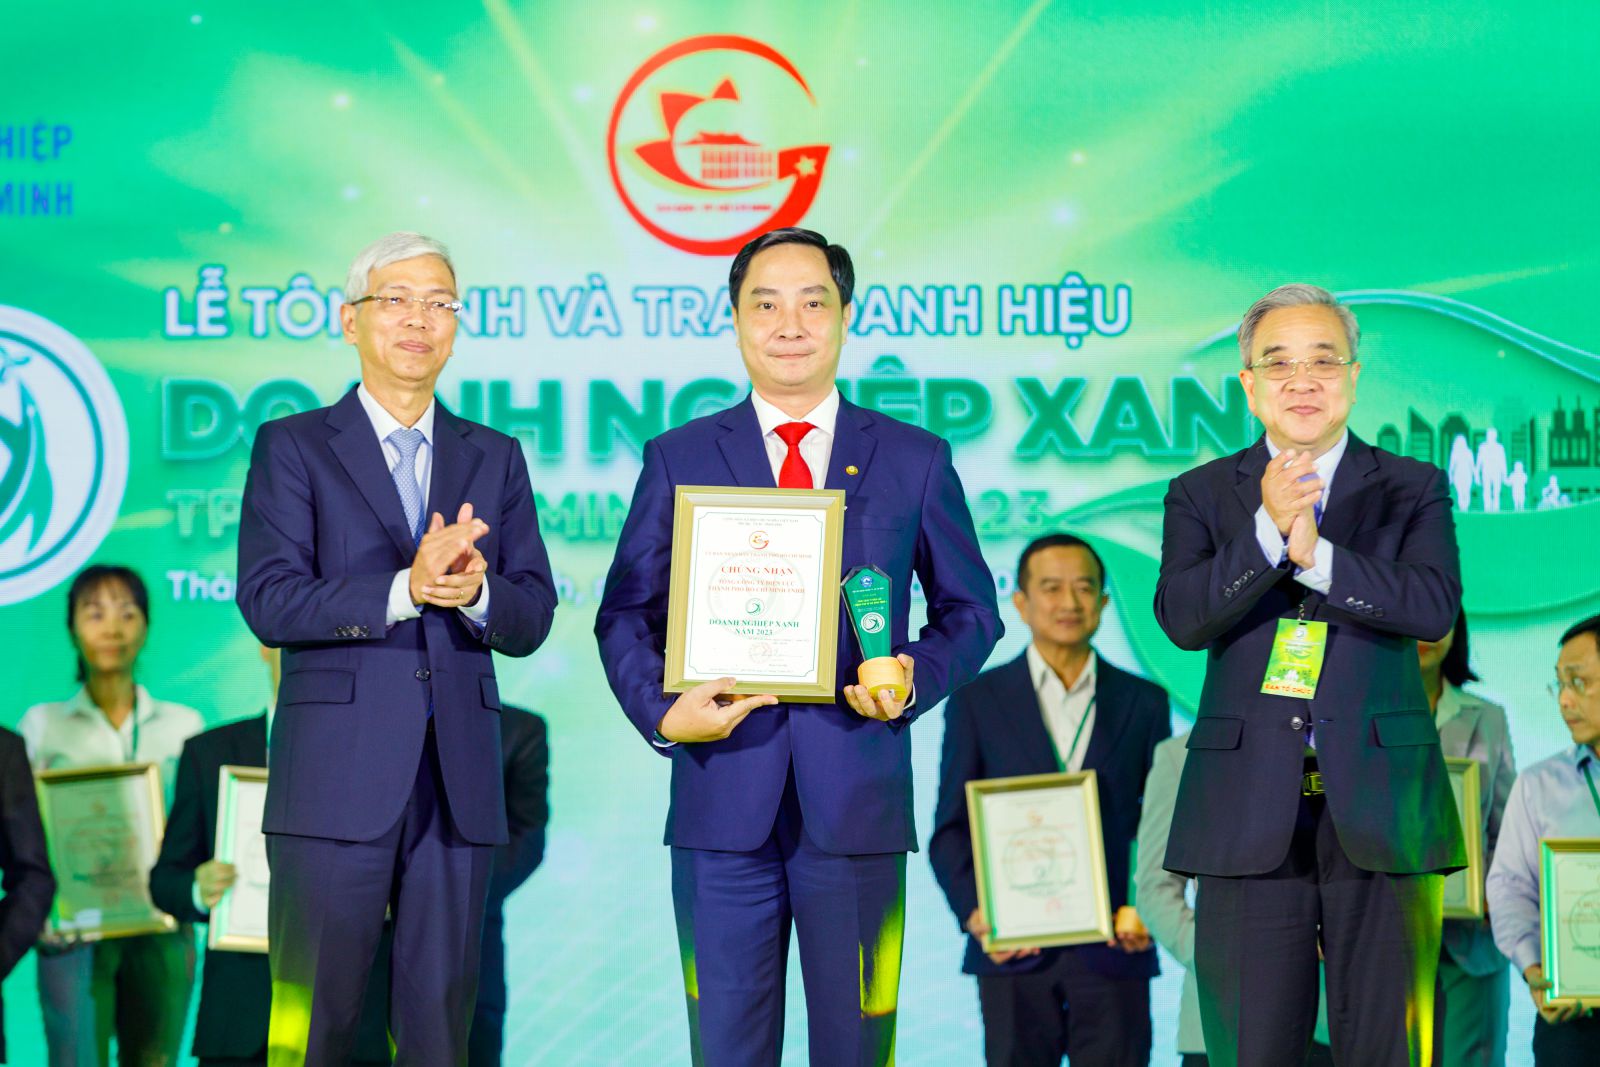 Ông Võ Văn Hoan - Phó Chủ tịch UBND TPHCM cùng ông Nguyễn Ngọc Hòa - Chủ tịch Hiệp hội Doanh nghiệp TPHCM (HUBA) trao biểu trưng và danh hiệu Doanh nghiệp xanh 2023 cho đại diện EVNHCMC.